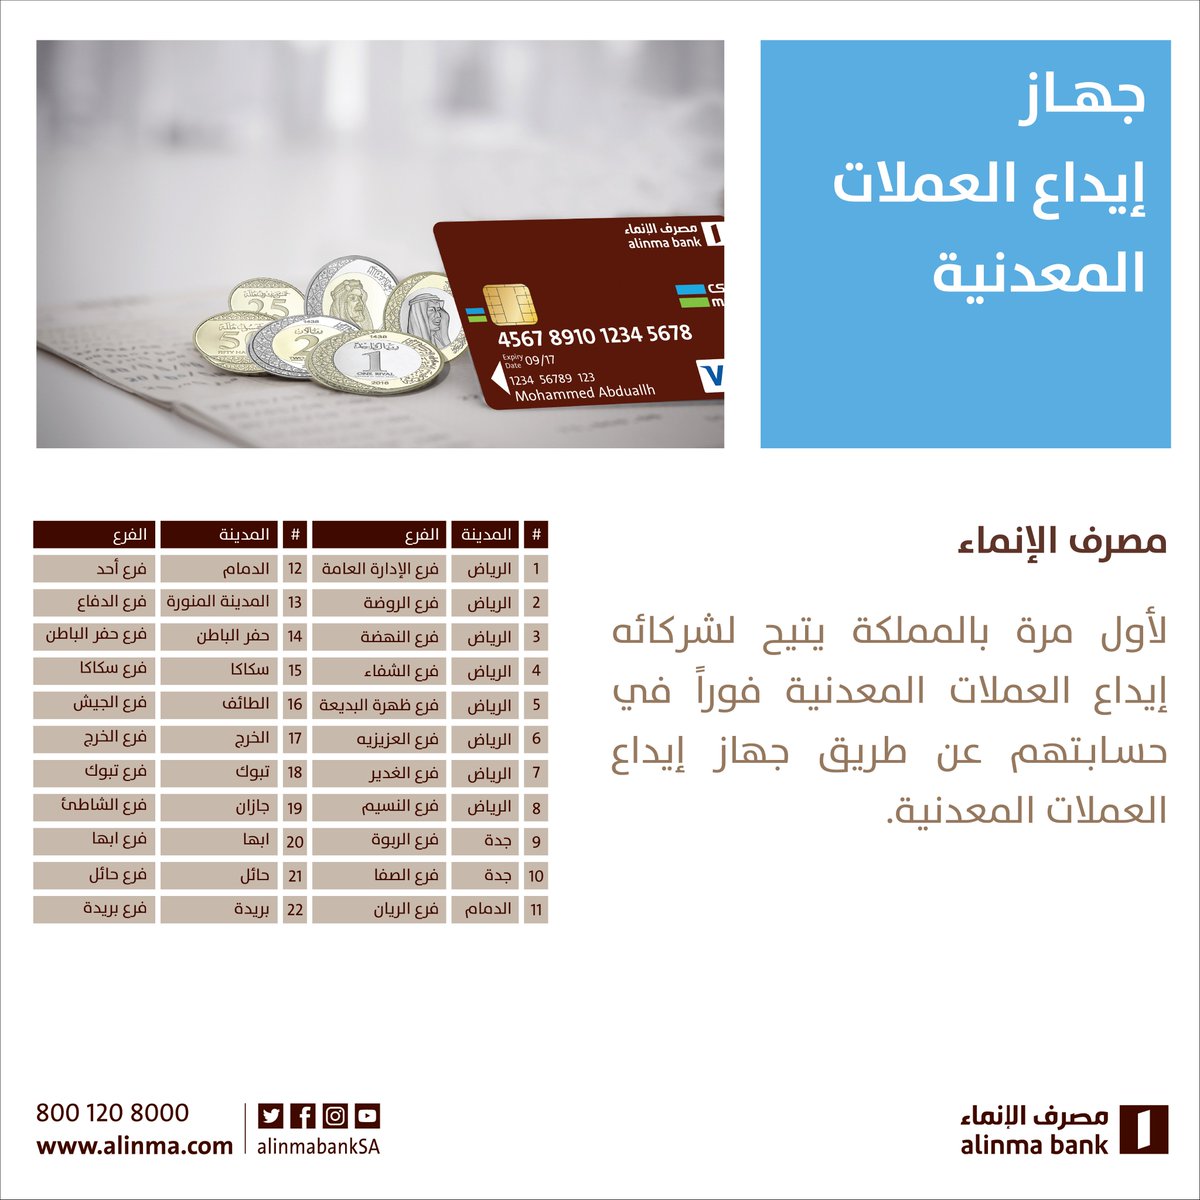 مصرف الإنماء Sur Twitter مصرف الإنماء أول مصرف في المملكة العربية السعودية يوفر جهاز إيداع العملات المعدنية في فروع مختارة